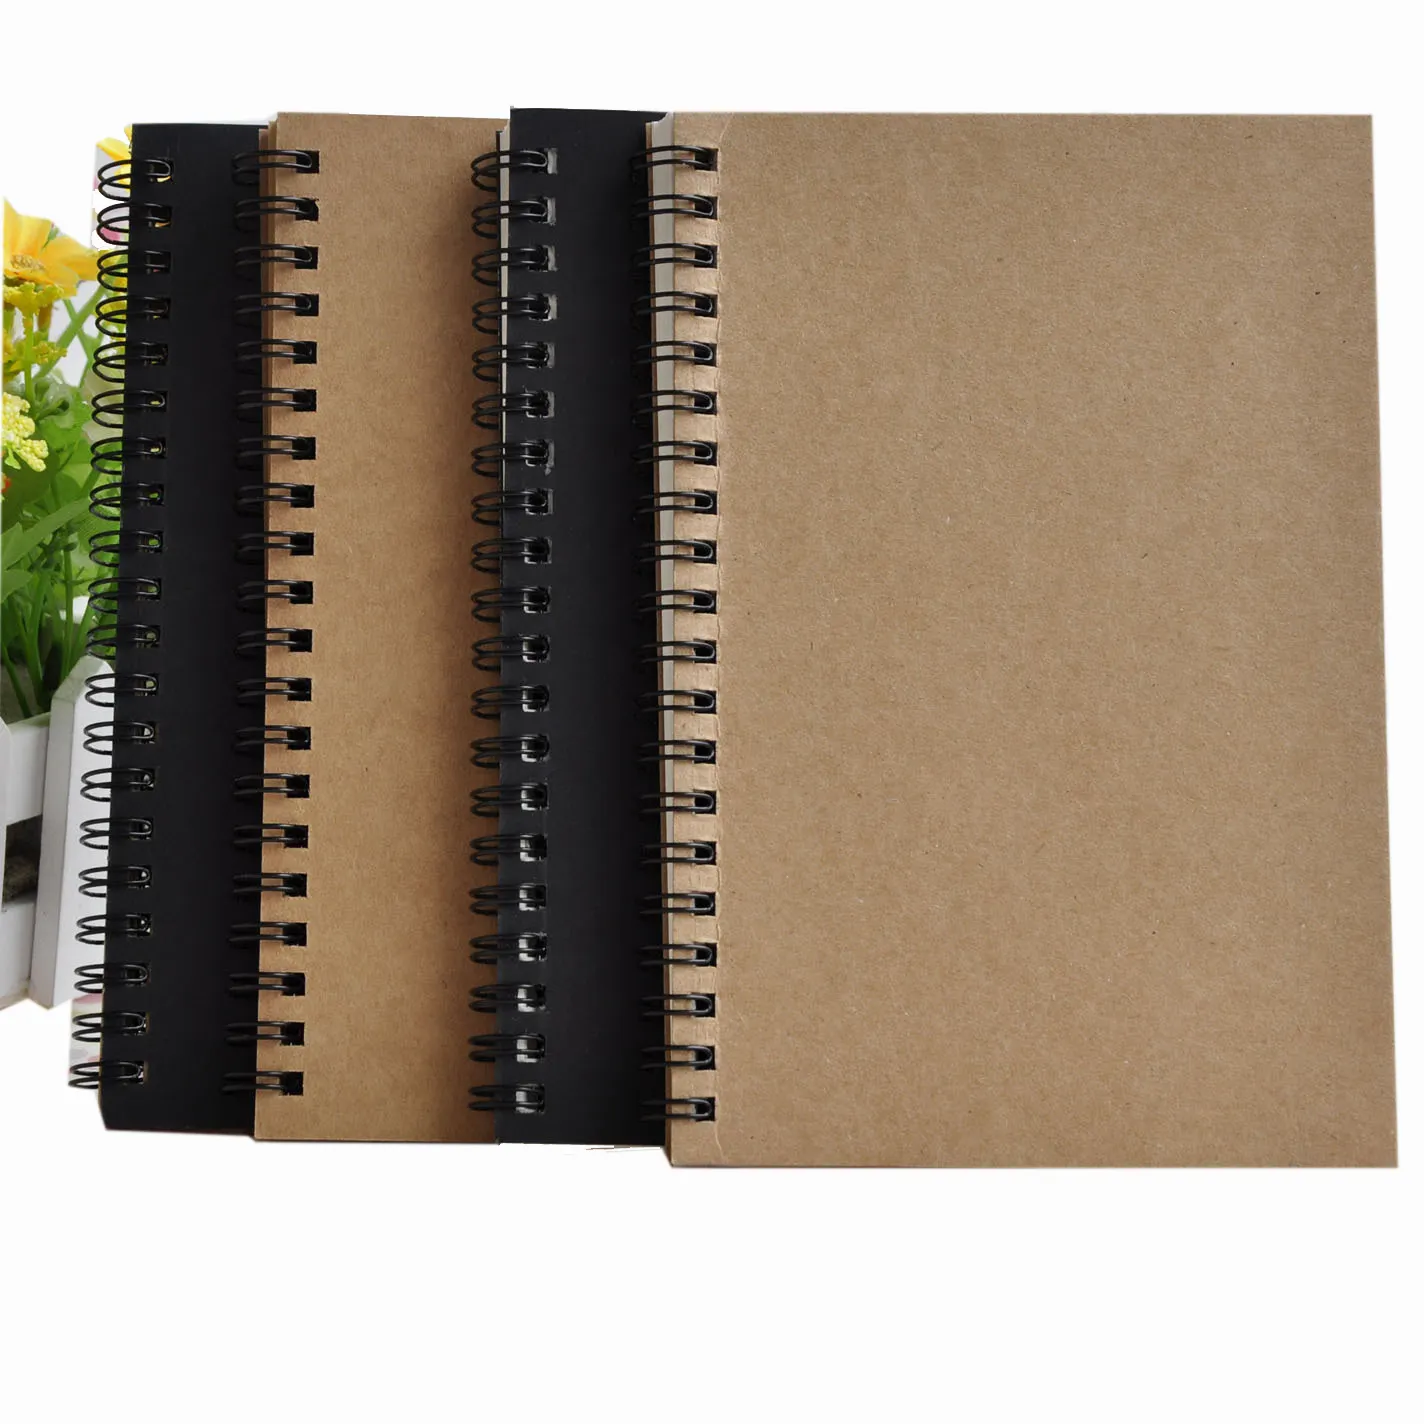 Bobina de papel de espiral personalizada, cobertura natural de papel em branco para sketchbook horizontal branco